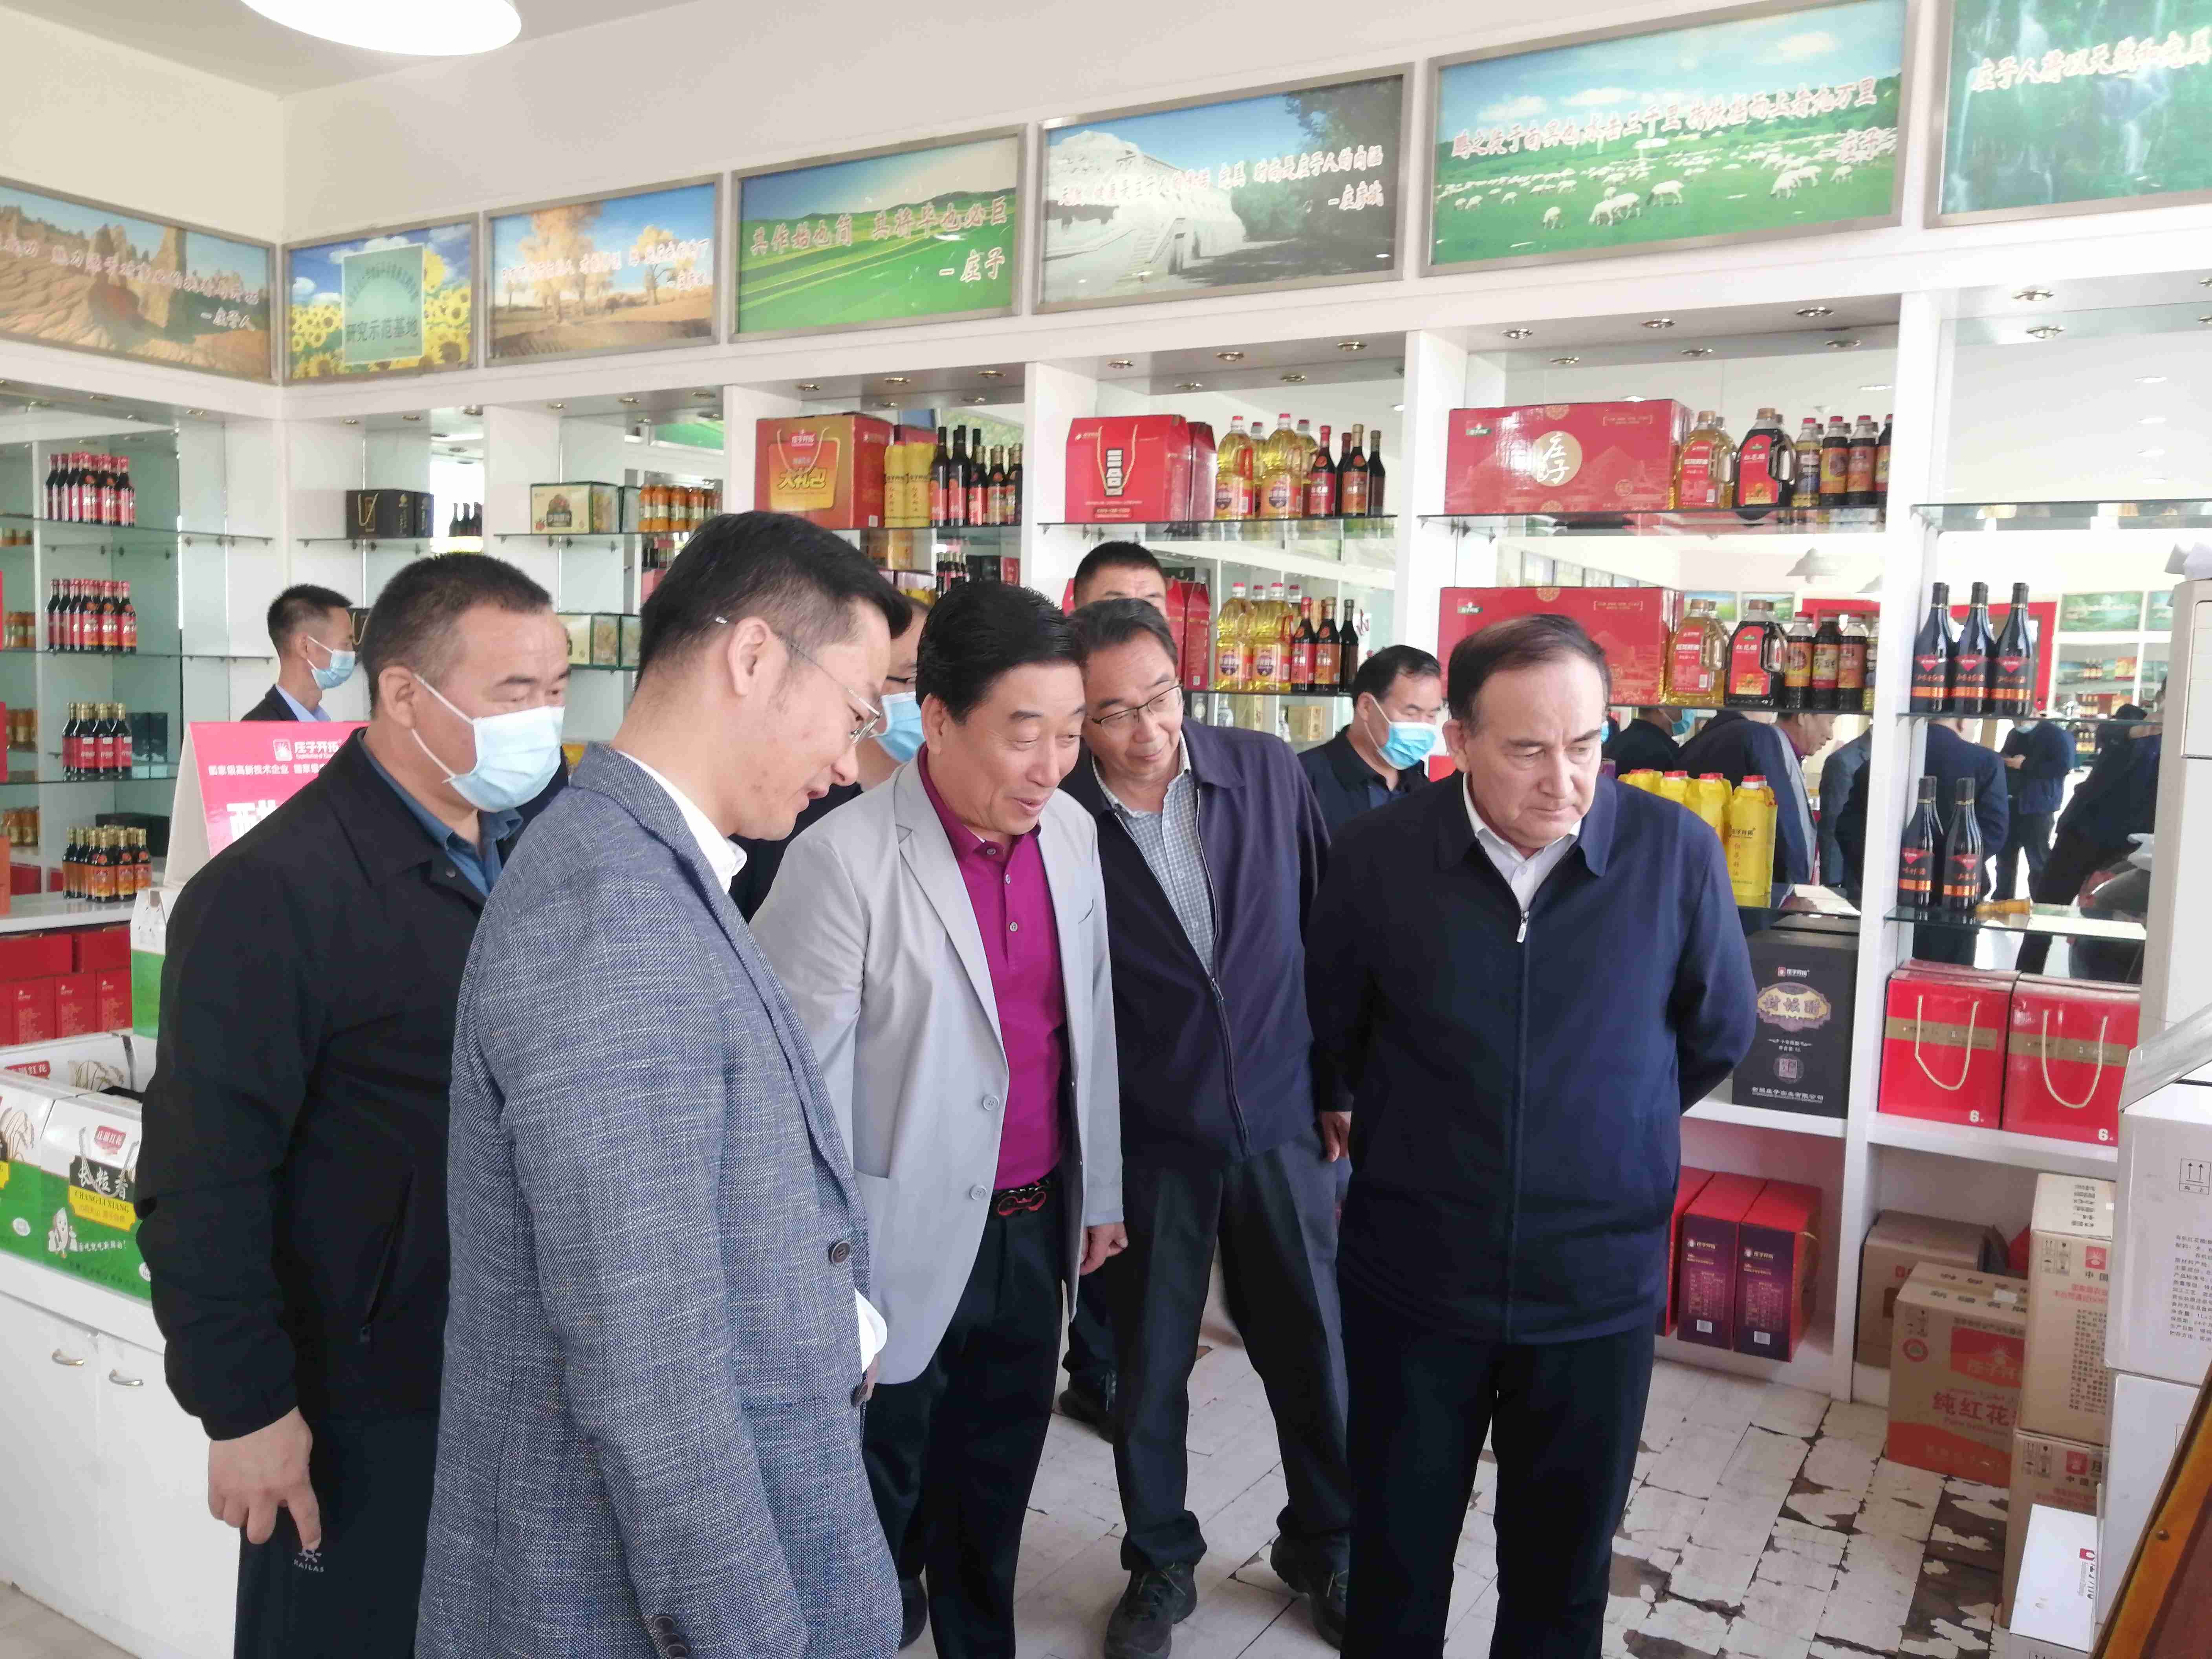 助力龙头企业引领农业产业化不断发展 农业厅厅长走进新疆庄子实业